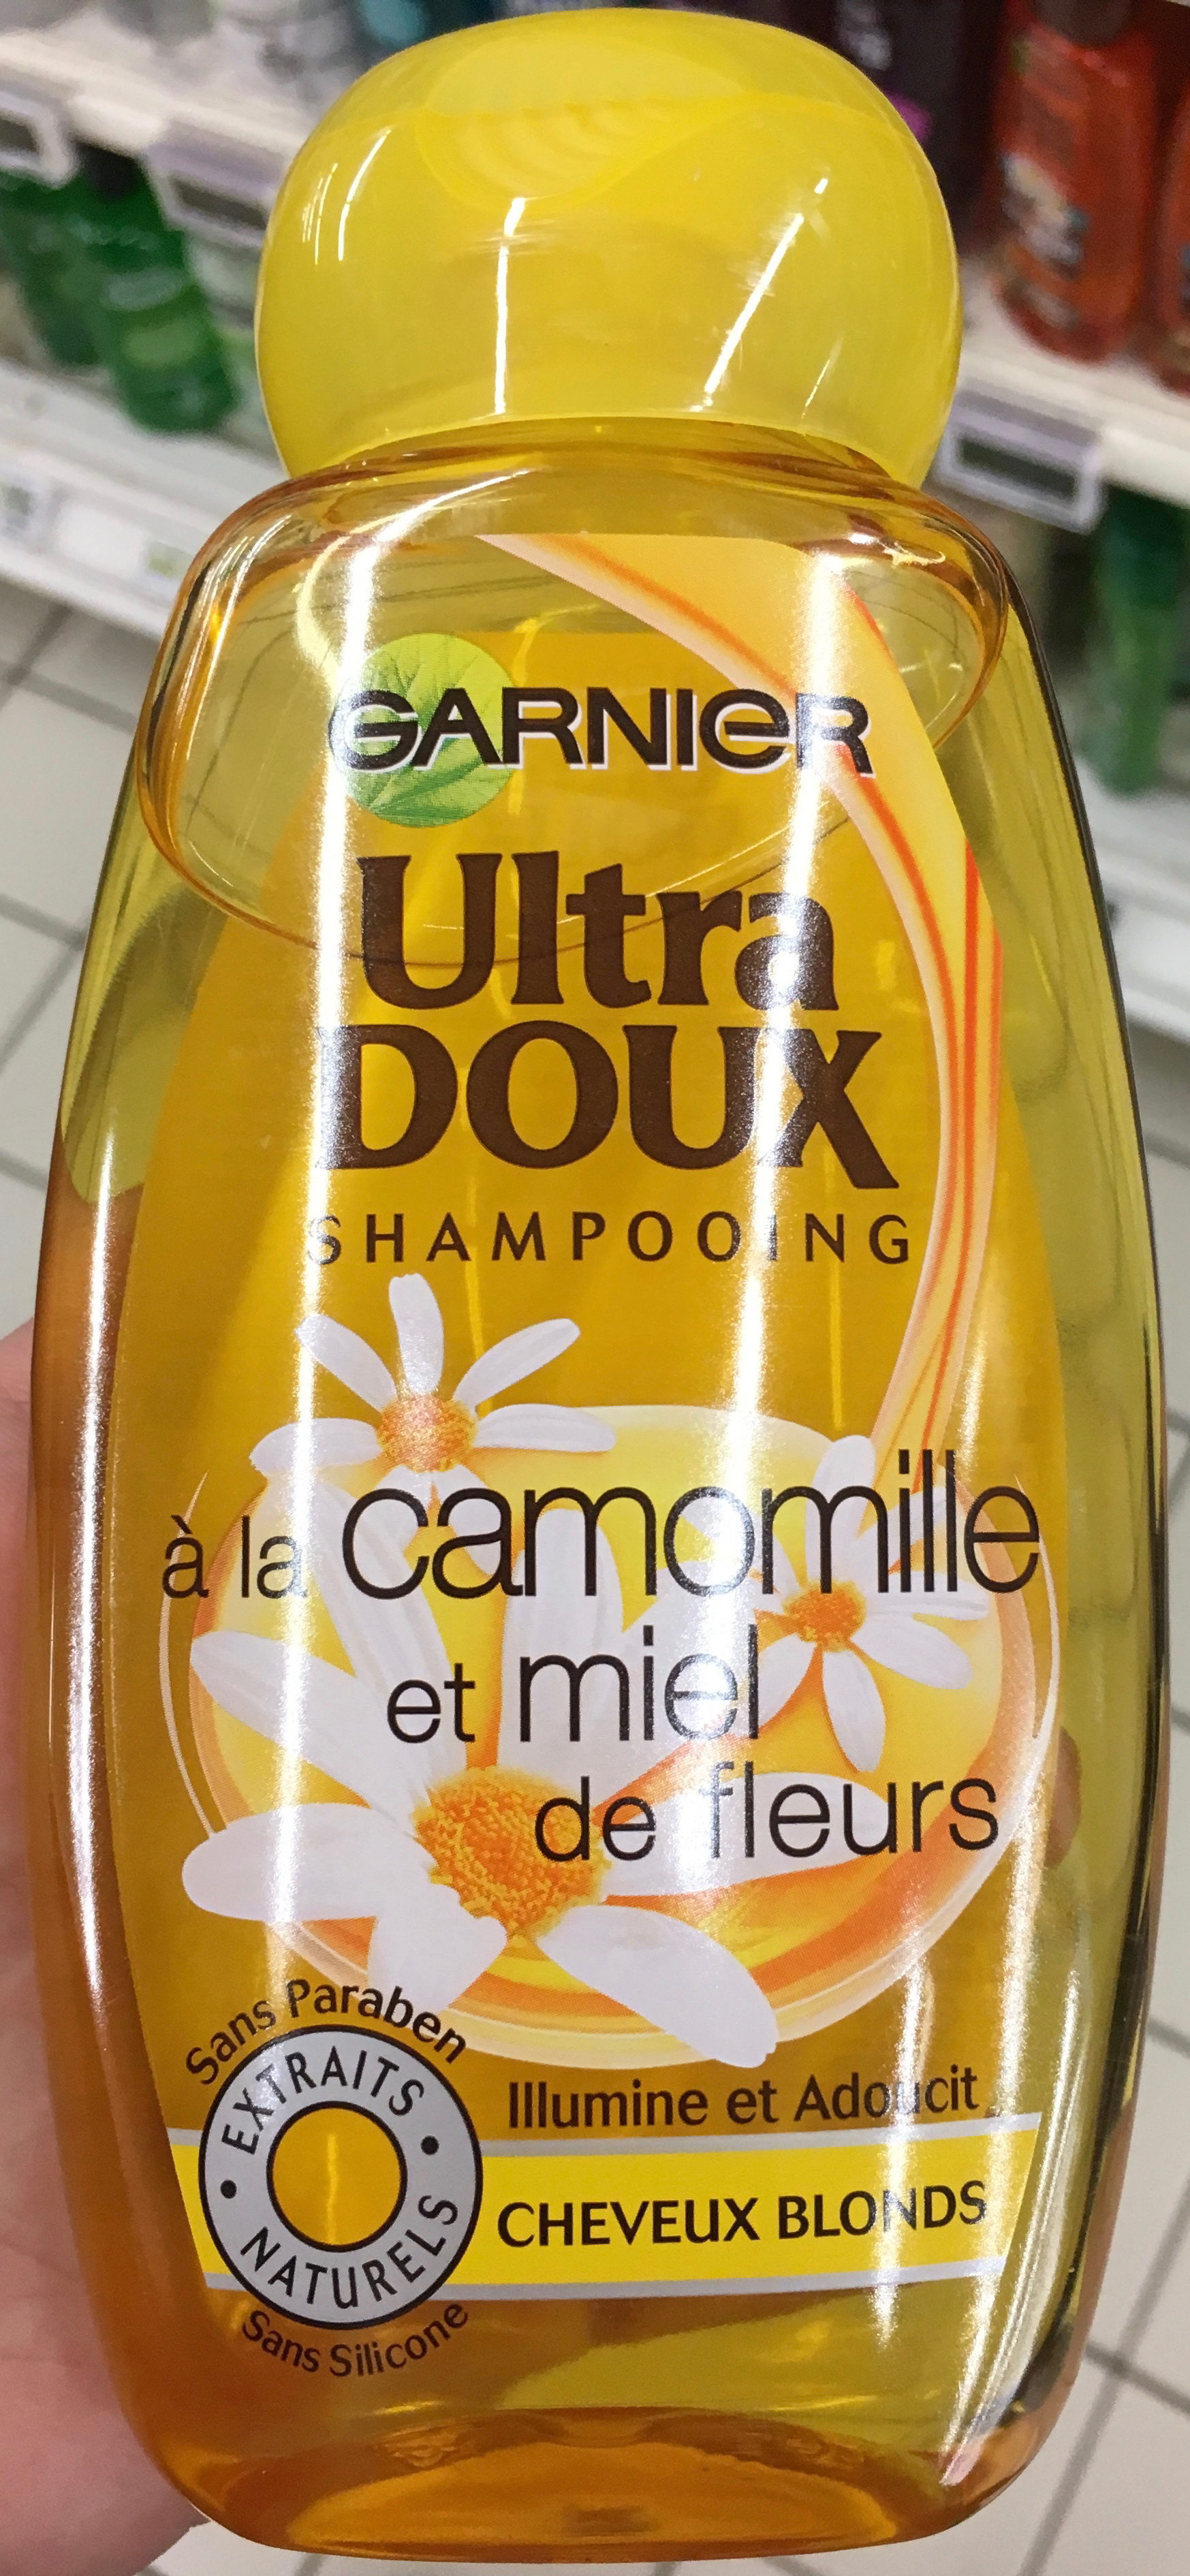 Ultra Doux Shampooing à la camomille et miel de fleurs - Product - fr